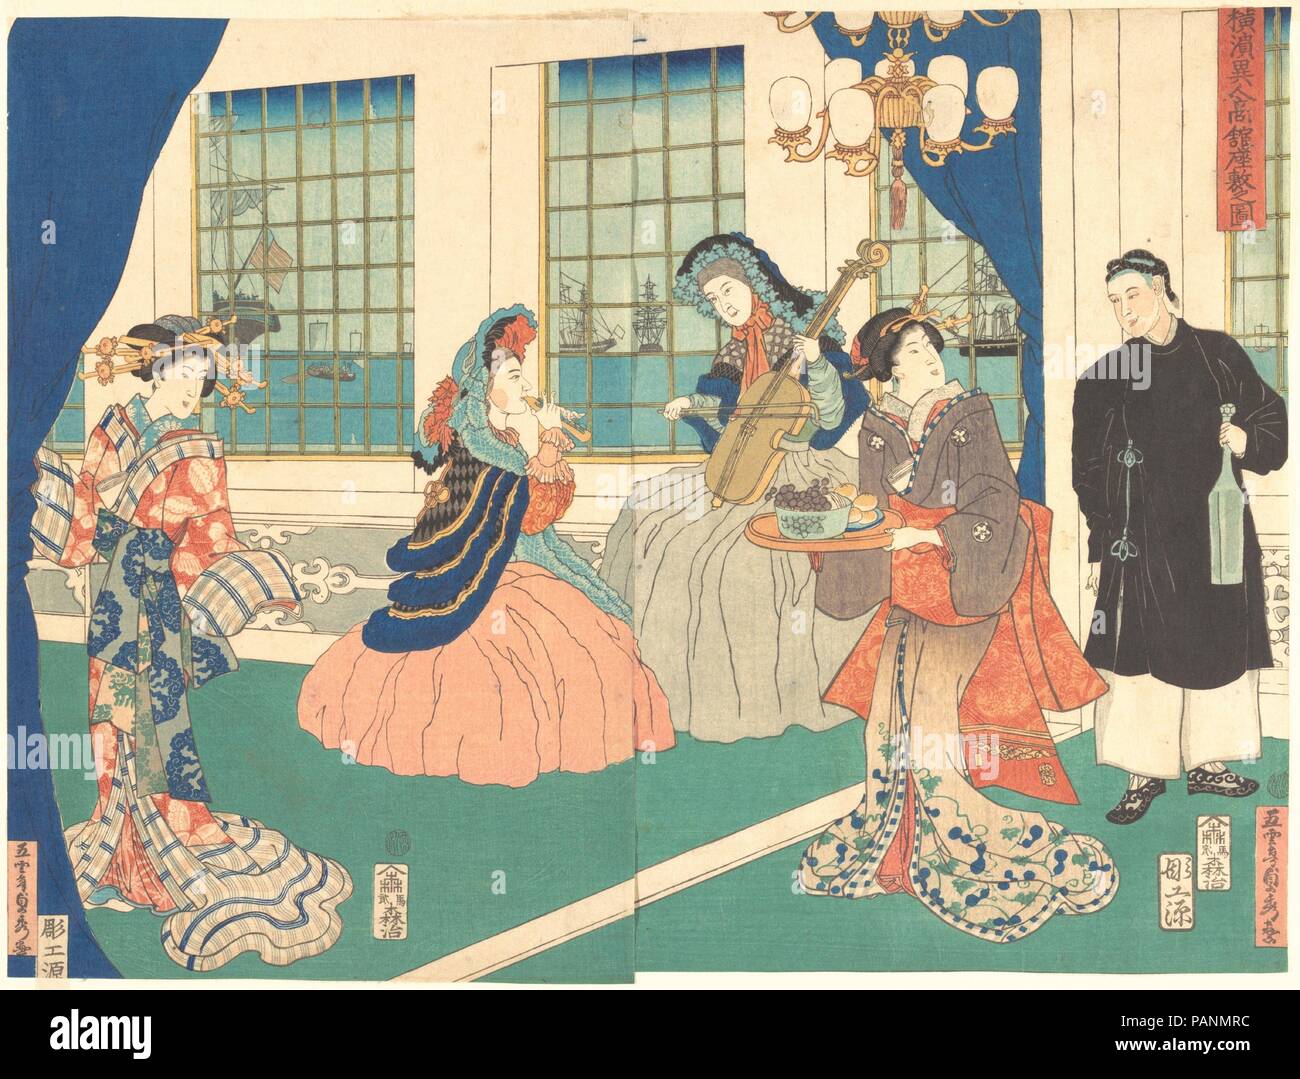 Disegno di una sala business straniero stabilimento a Yokohama. Artista: Utagawa (Gountei) Sadahide (giapponese, 1807-1878/79). Cultura: il Giappone. Dimensioni: Immagine: 13 7/8 × 18 1/4 in. (35,2 × 46,4 cm) tappeto: 18 3/4 × 23 1/4 in. (47,6 × 59,1 cm). Data: 9° mese, 1861. La cortigiana sulla sinistra, indossando una spettacolare kimono con farfalle e strisce, osserva due donne occidentali la riproduzione di viola e flauto al centro della stanza. Un cameriere personale cinese e giapponese assistente femmina servire il vino, uva e dolci. In background, navi può essere visto attraverso il Western-style vetri, indicando Foto Stock